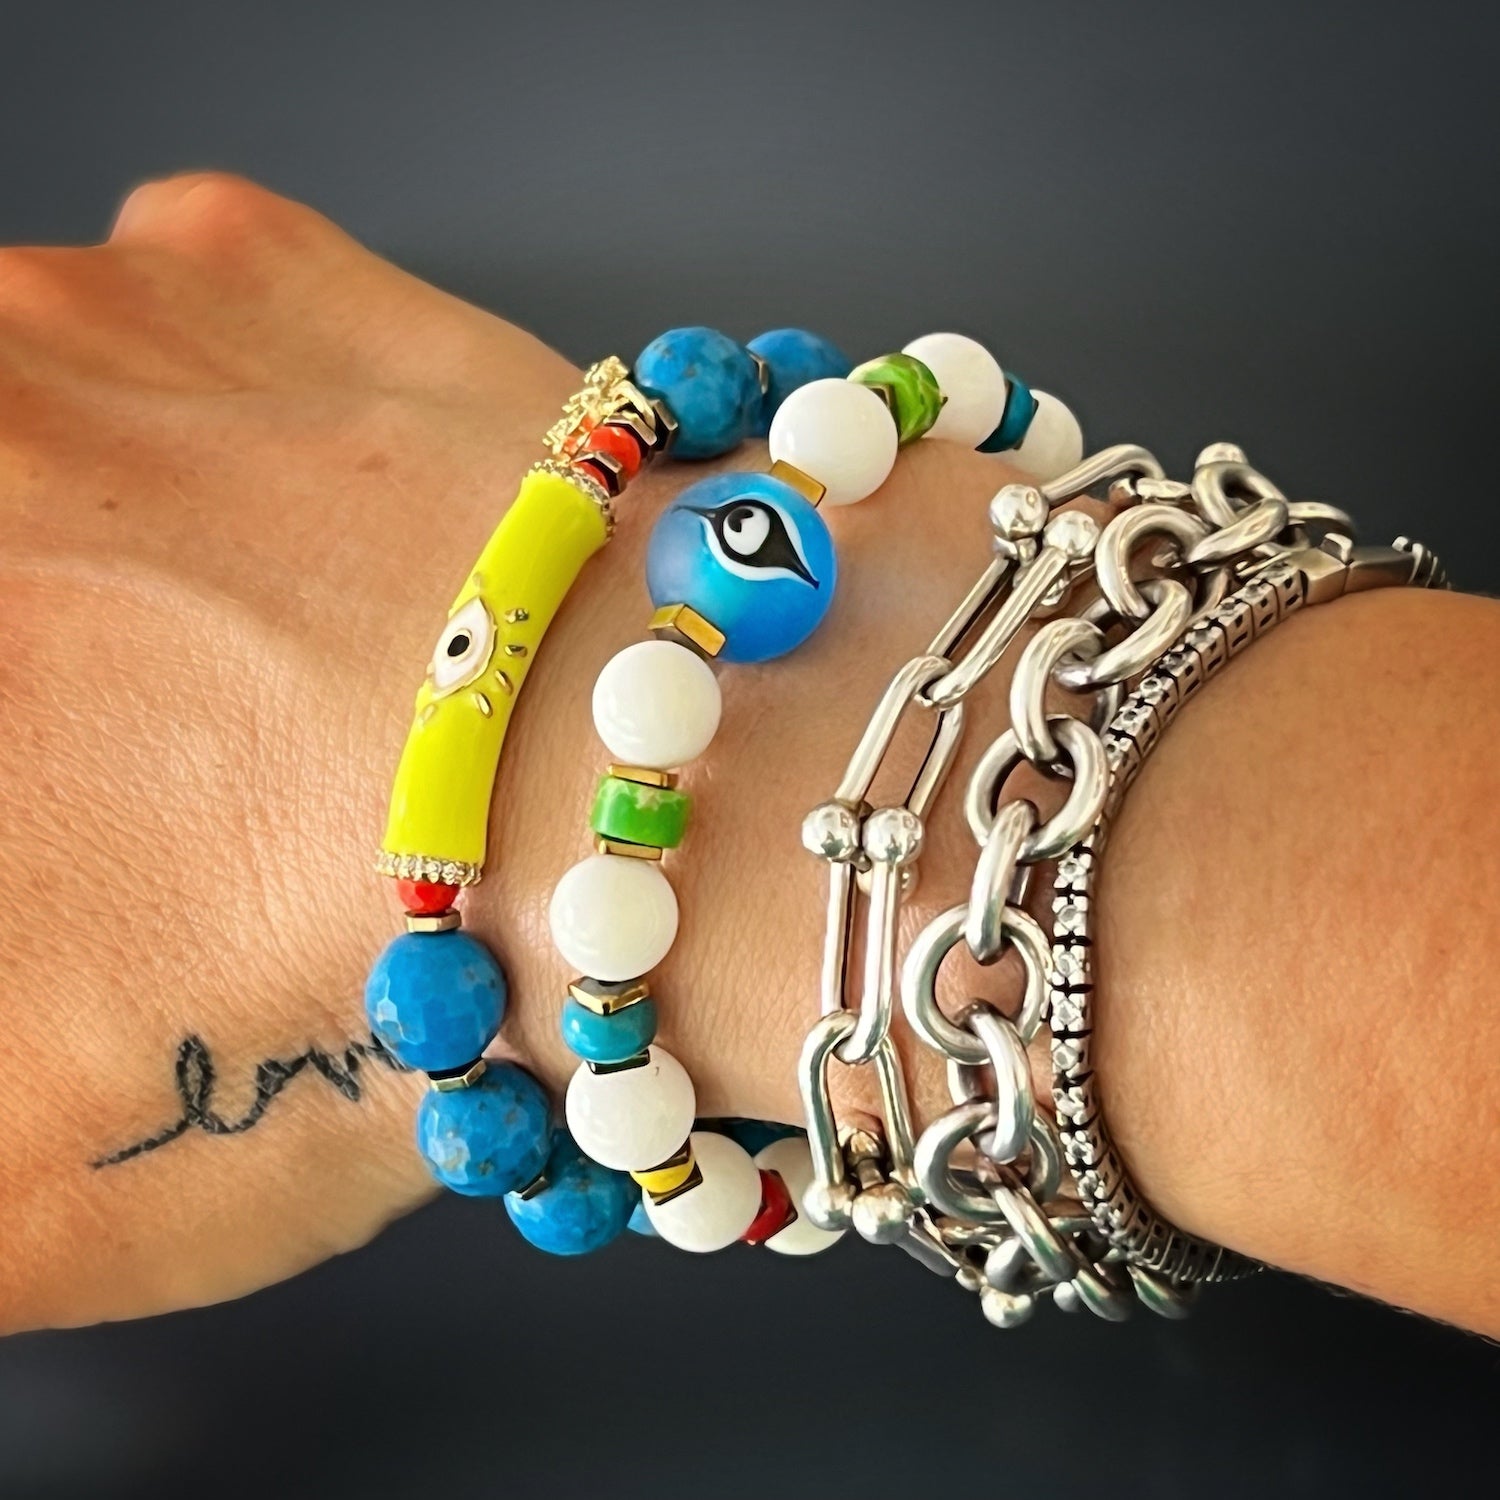 Model showcasing the Blue Evil Eye Bracelet with Glass Evil Eye Charm and Variscite Stone Beads